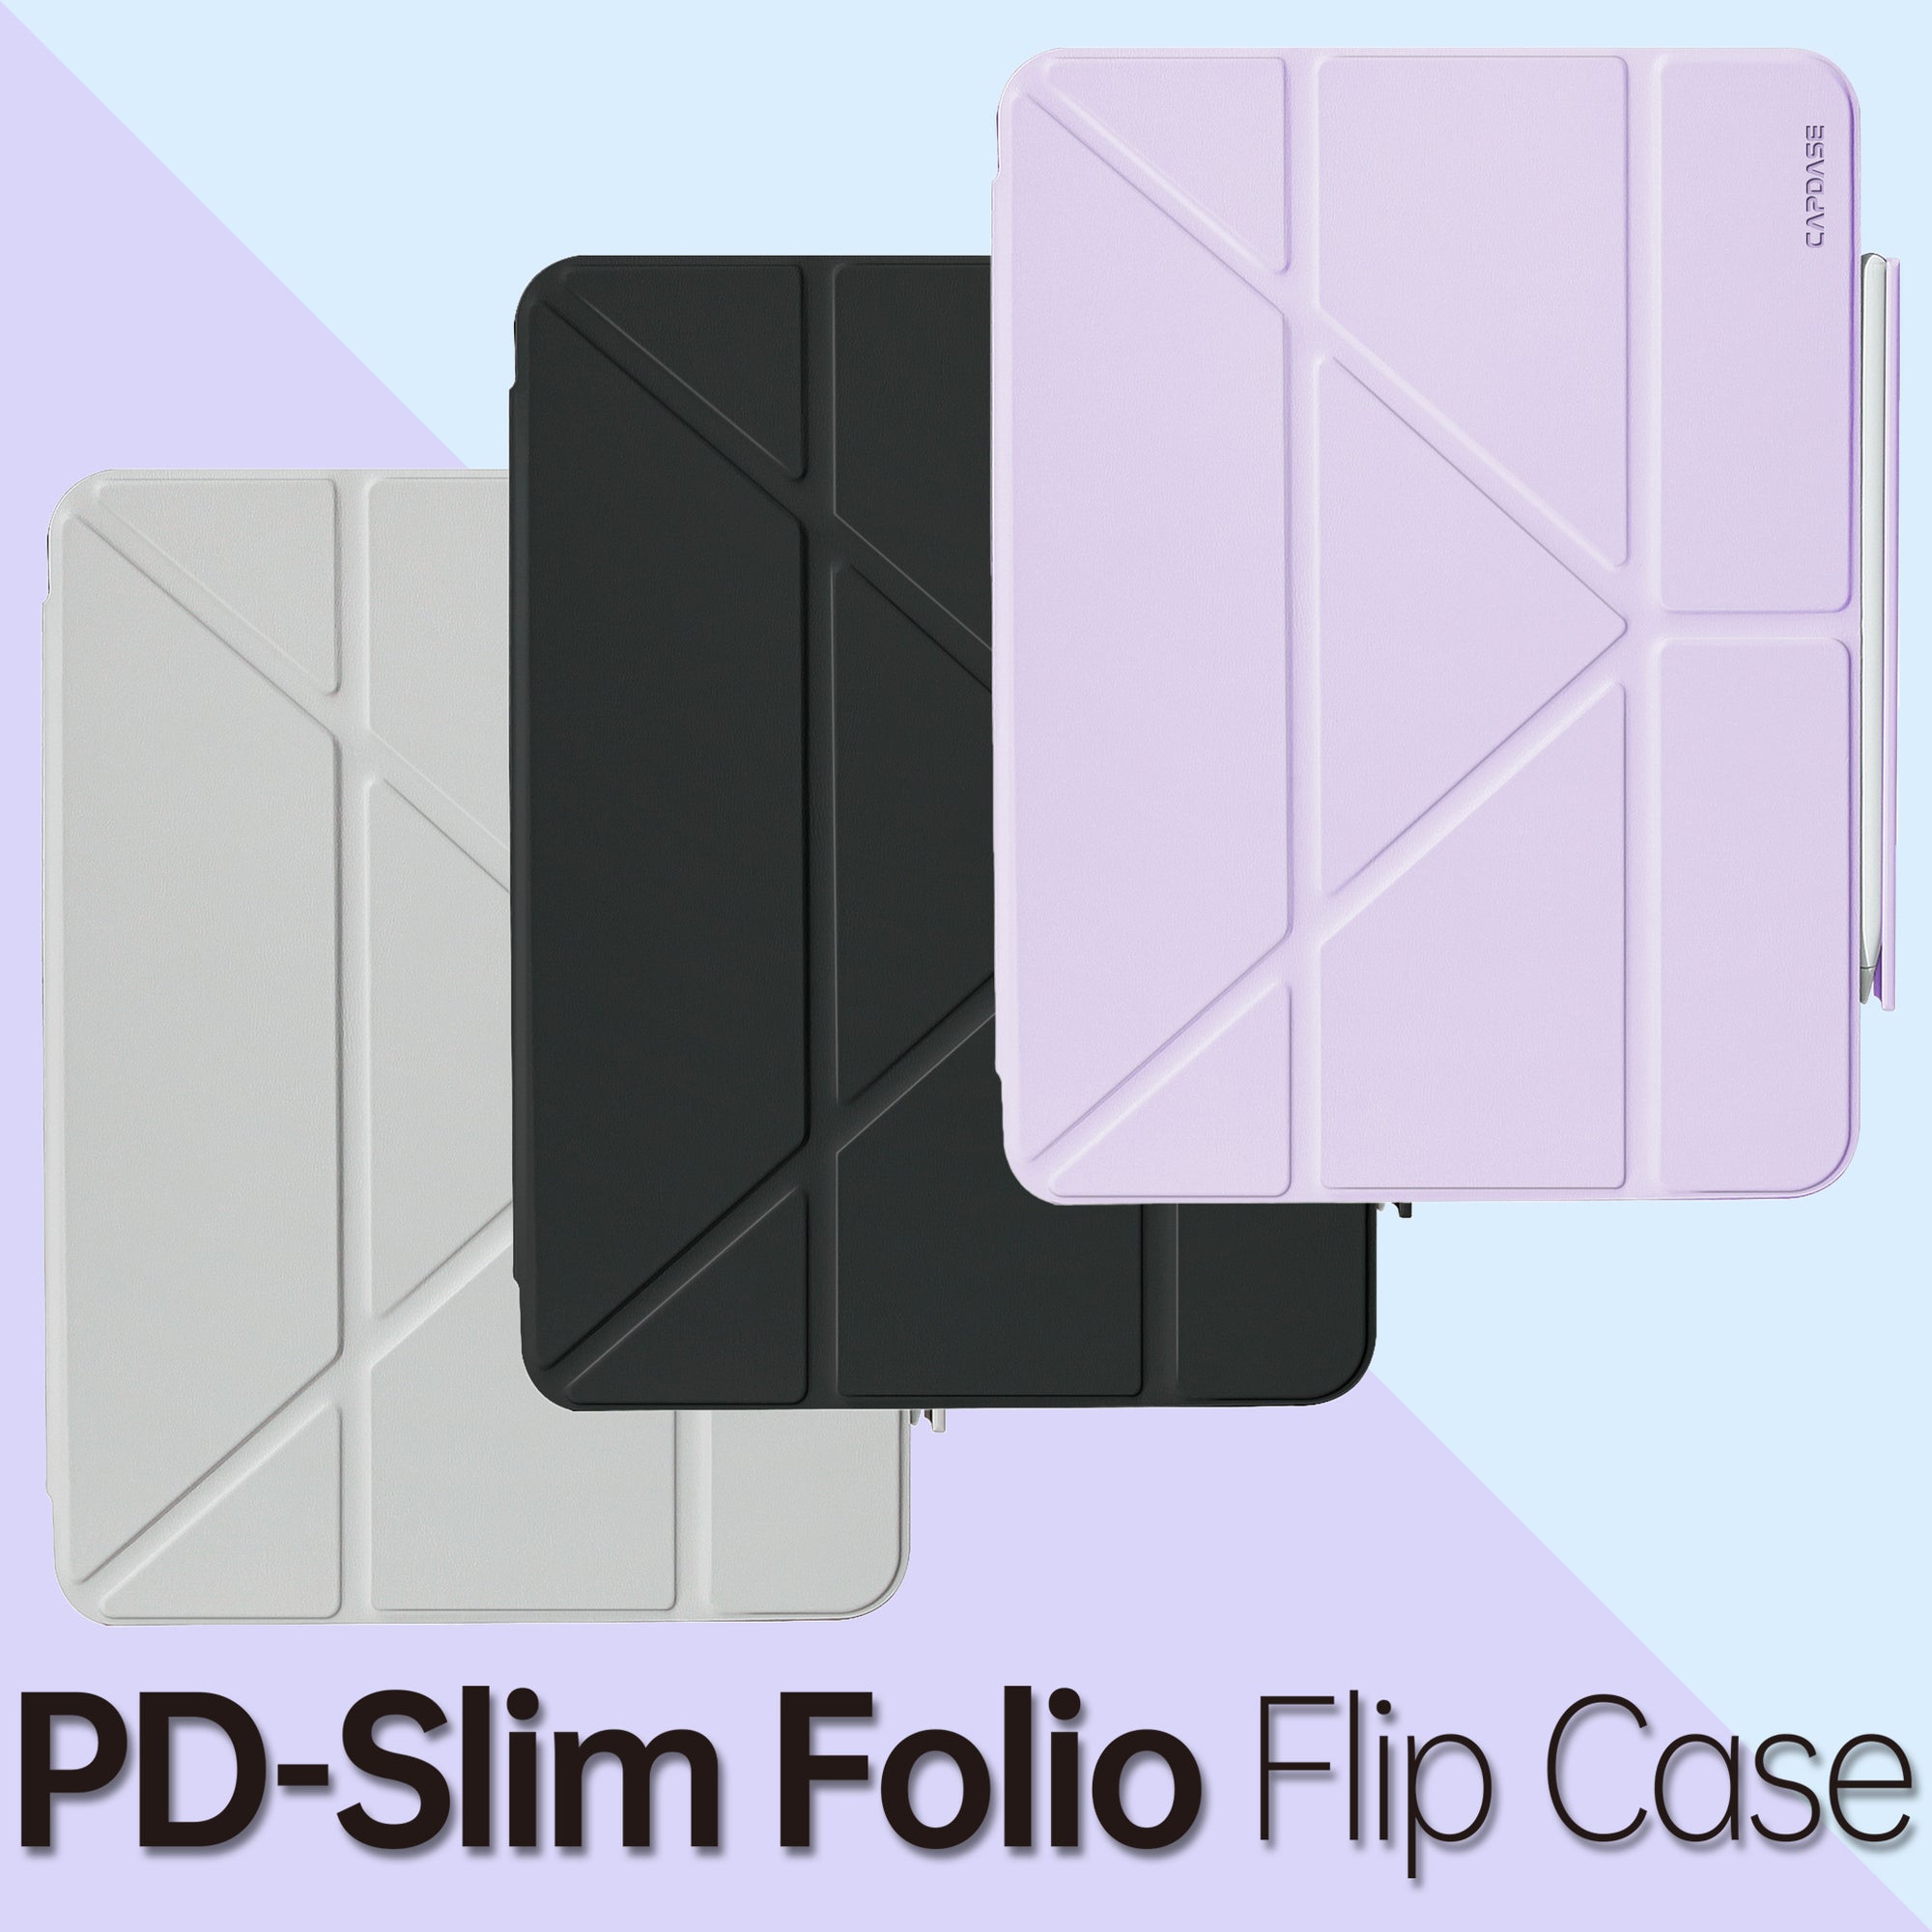 PD-Slim Folio Flip Case for iPad 10.2-inch